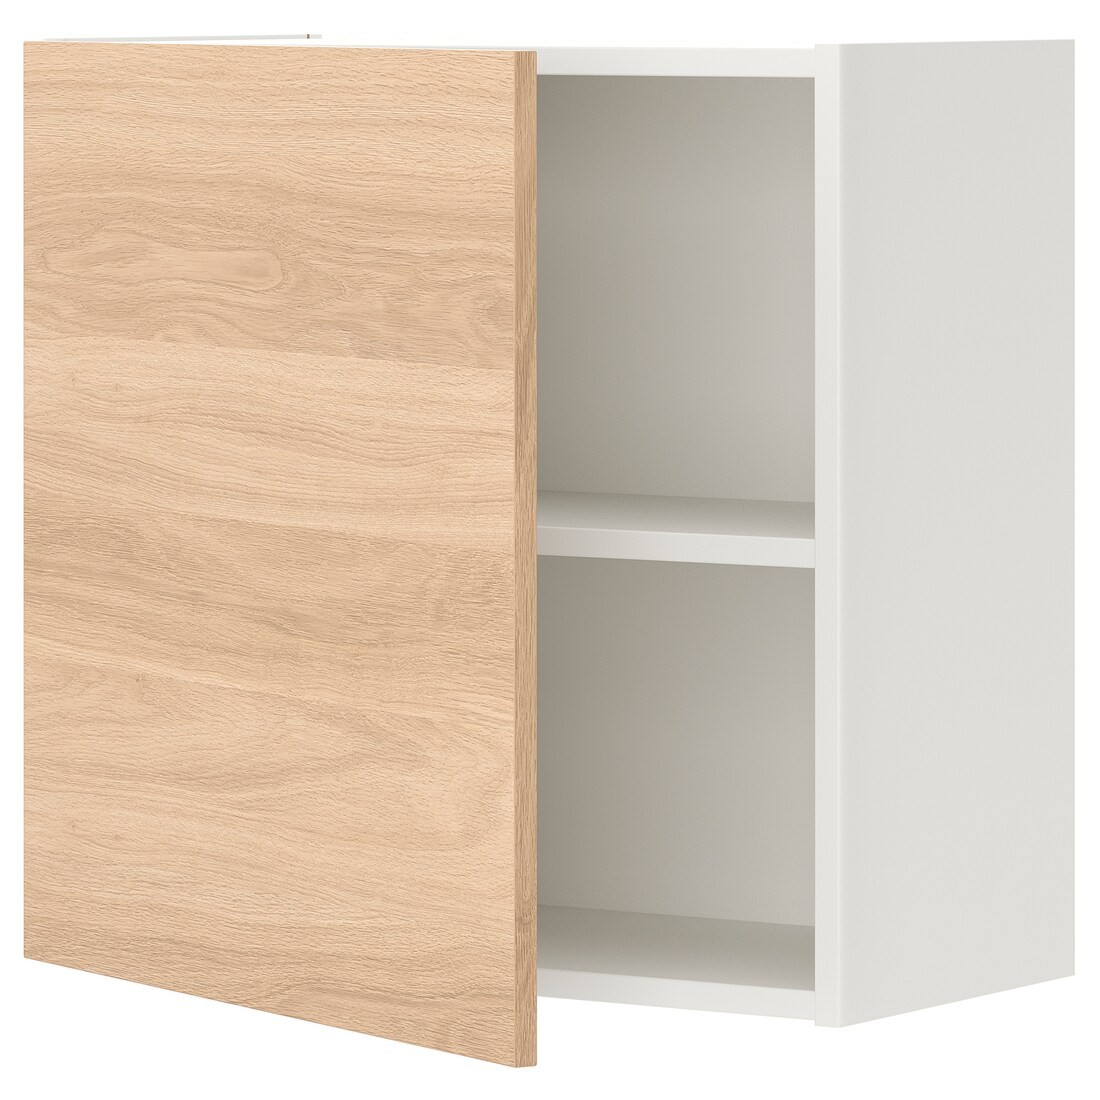 IKEA ENHET ЭНХЕТ Навесной шкаф с 1 полкой / дверями, белый / имитация дуба, 60x32x60 см 69321013 693.210.13